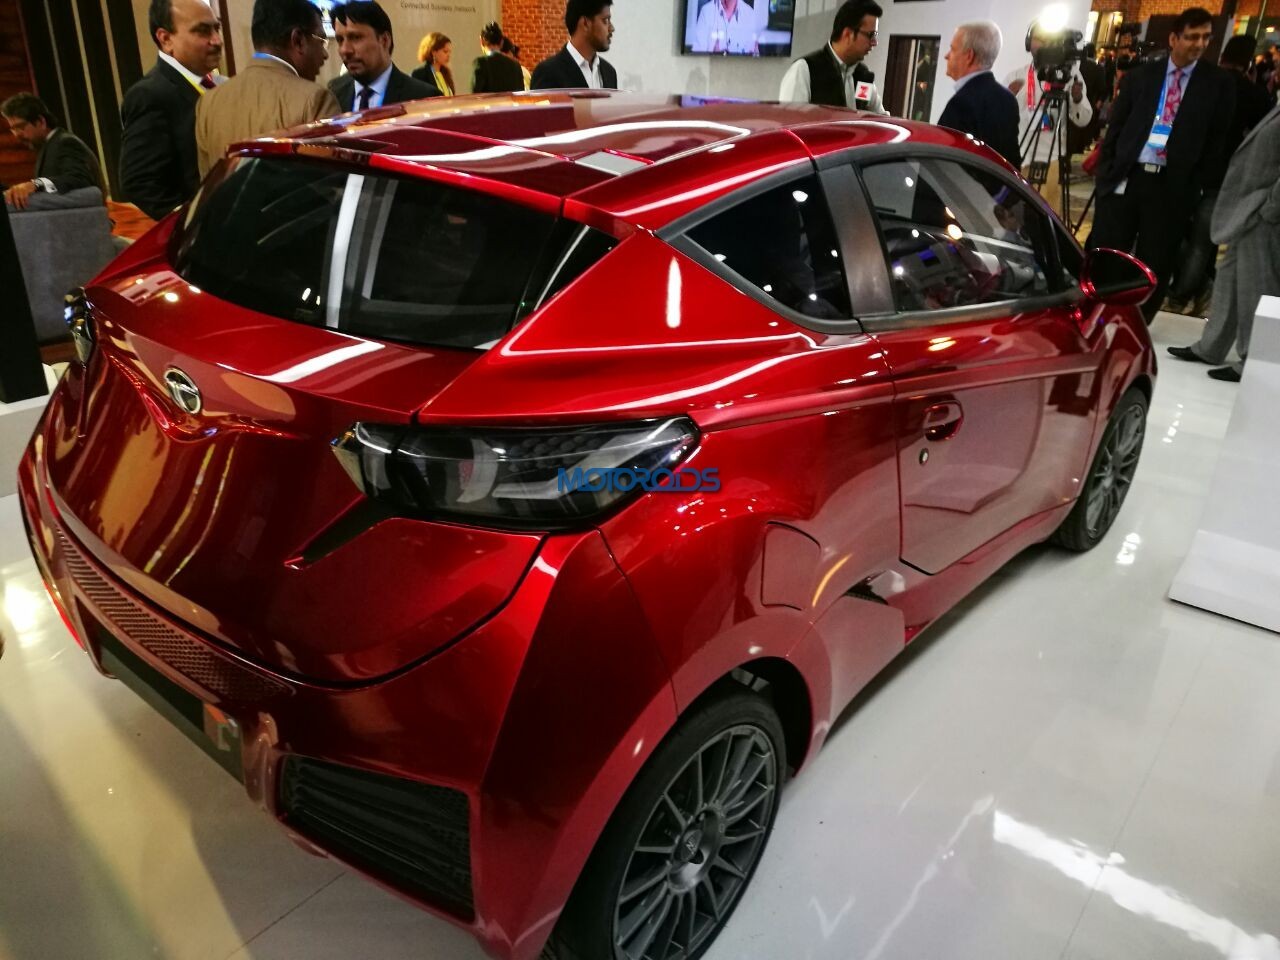 Berita, Tata-Tamo-C-Cube-Concept-4: Connected Car Experience : Bentuk Kerjasama Tata Motors dan Microsoft